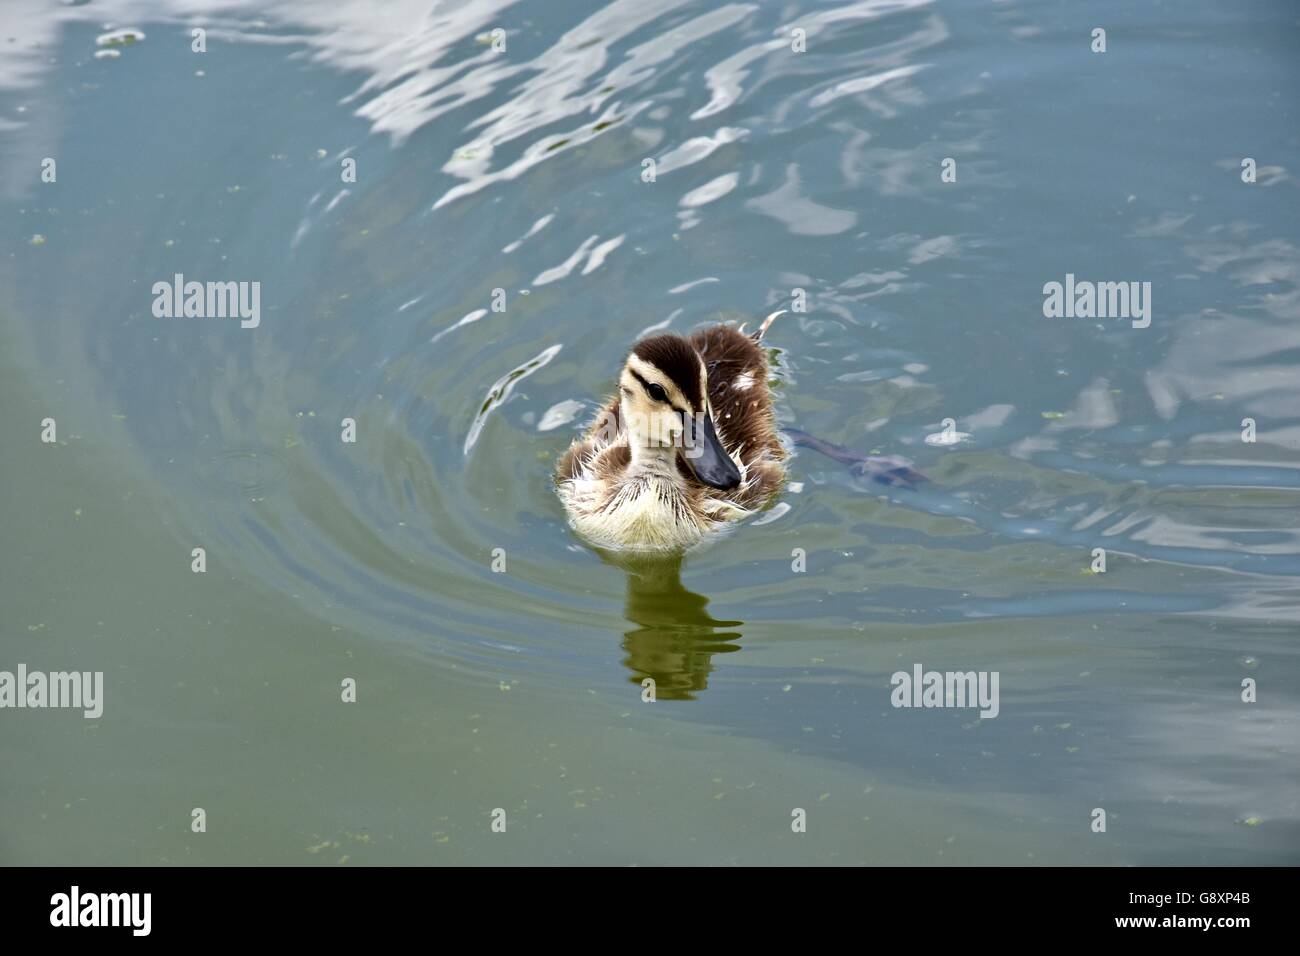 Eine junge Entlein durch einen See schwimmen Stockfoto